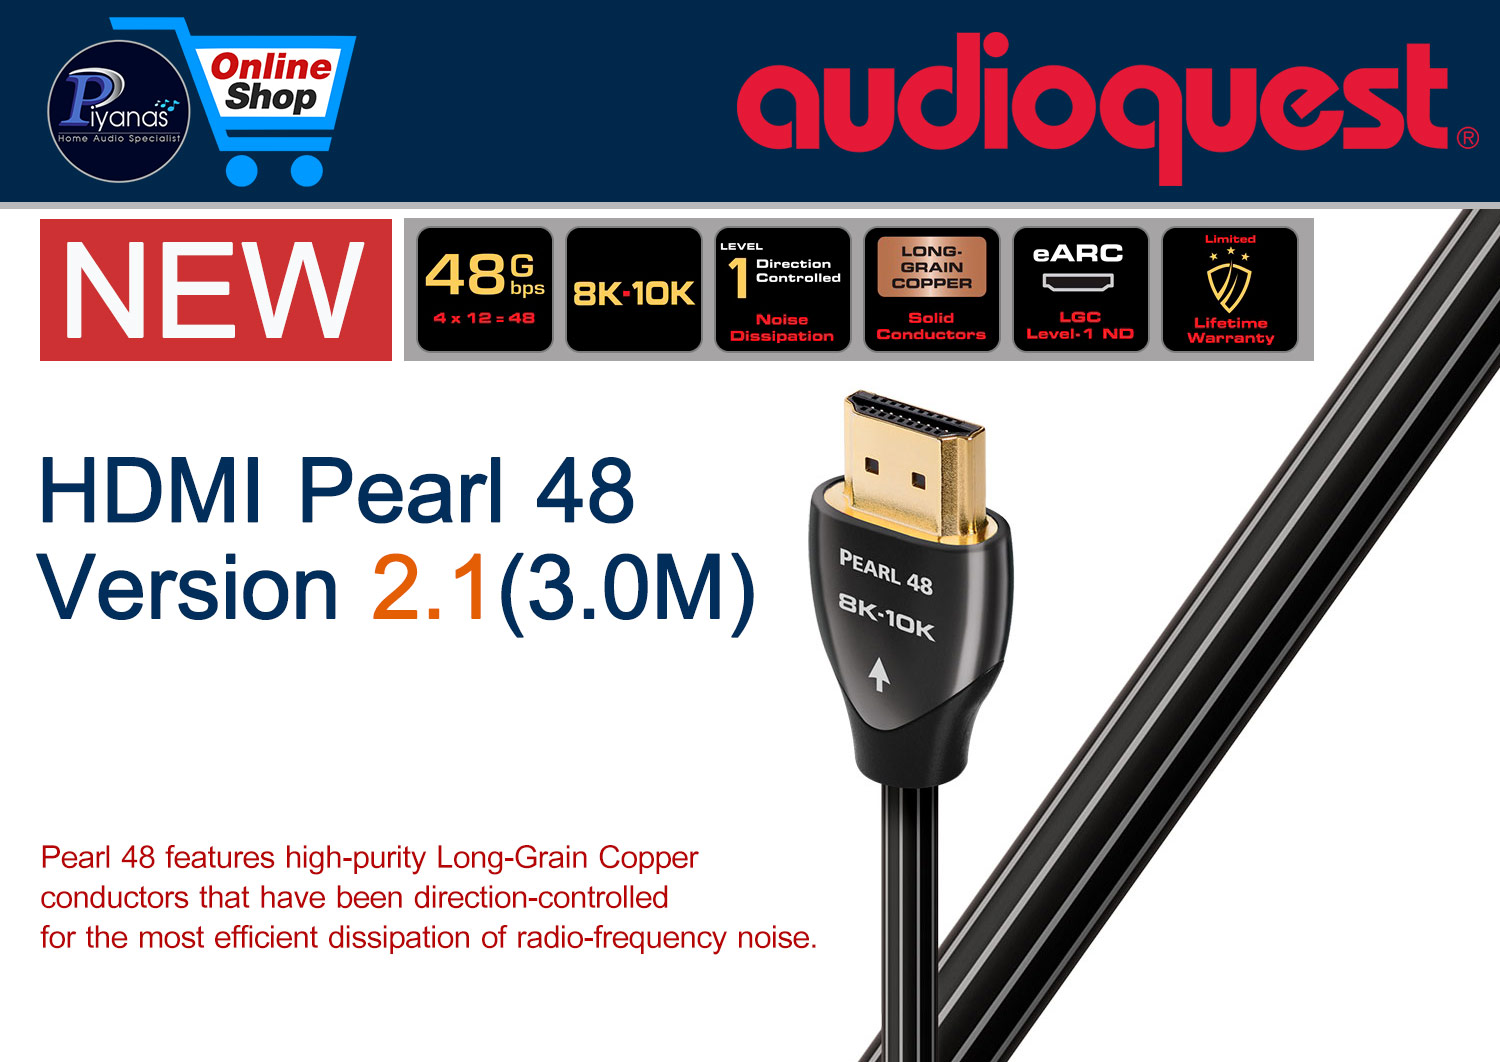 HDMI-Pearl 48 Version 2.1 (3.0M)